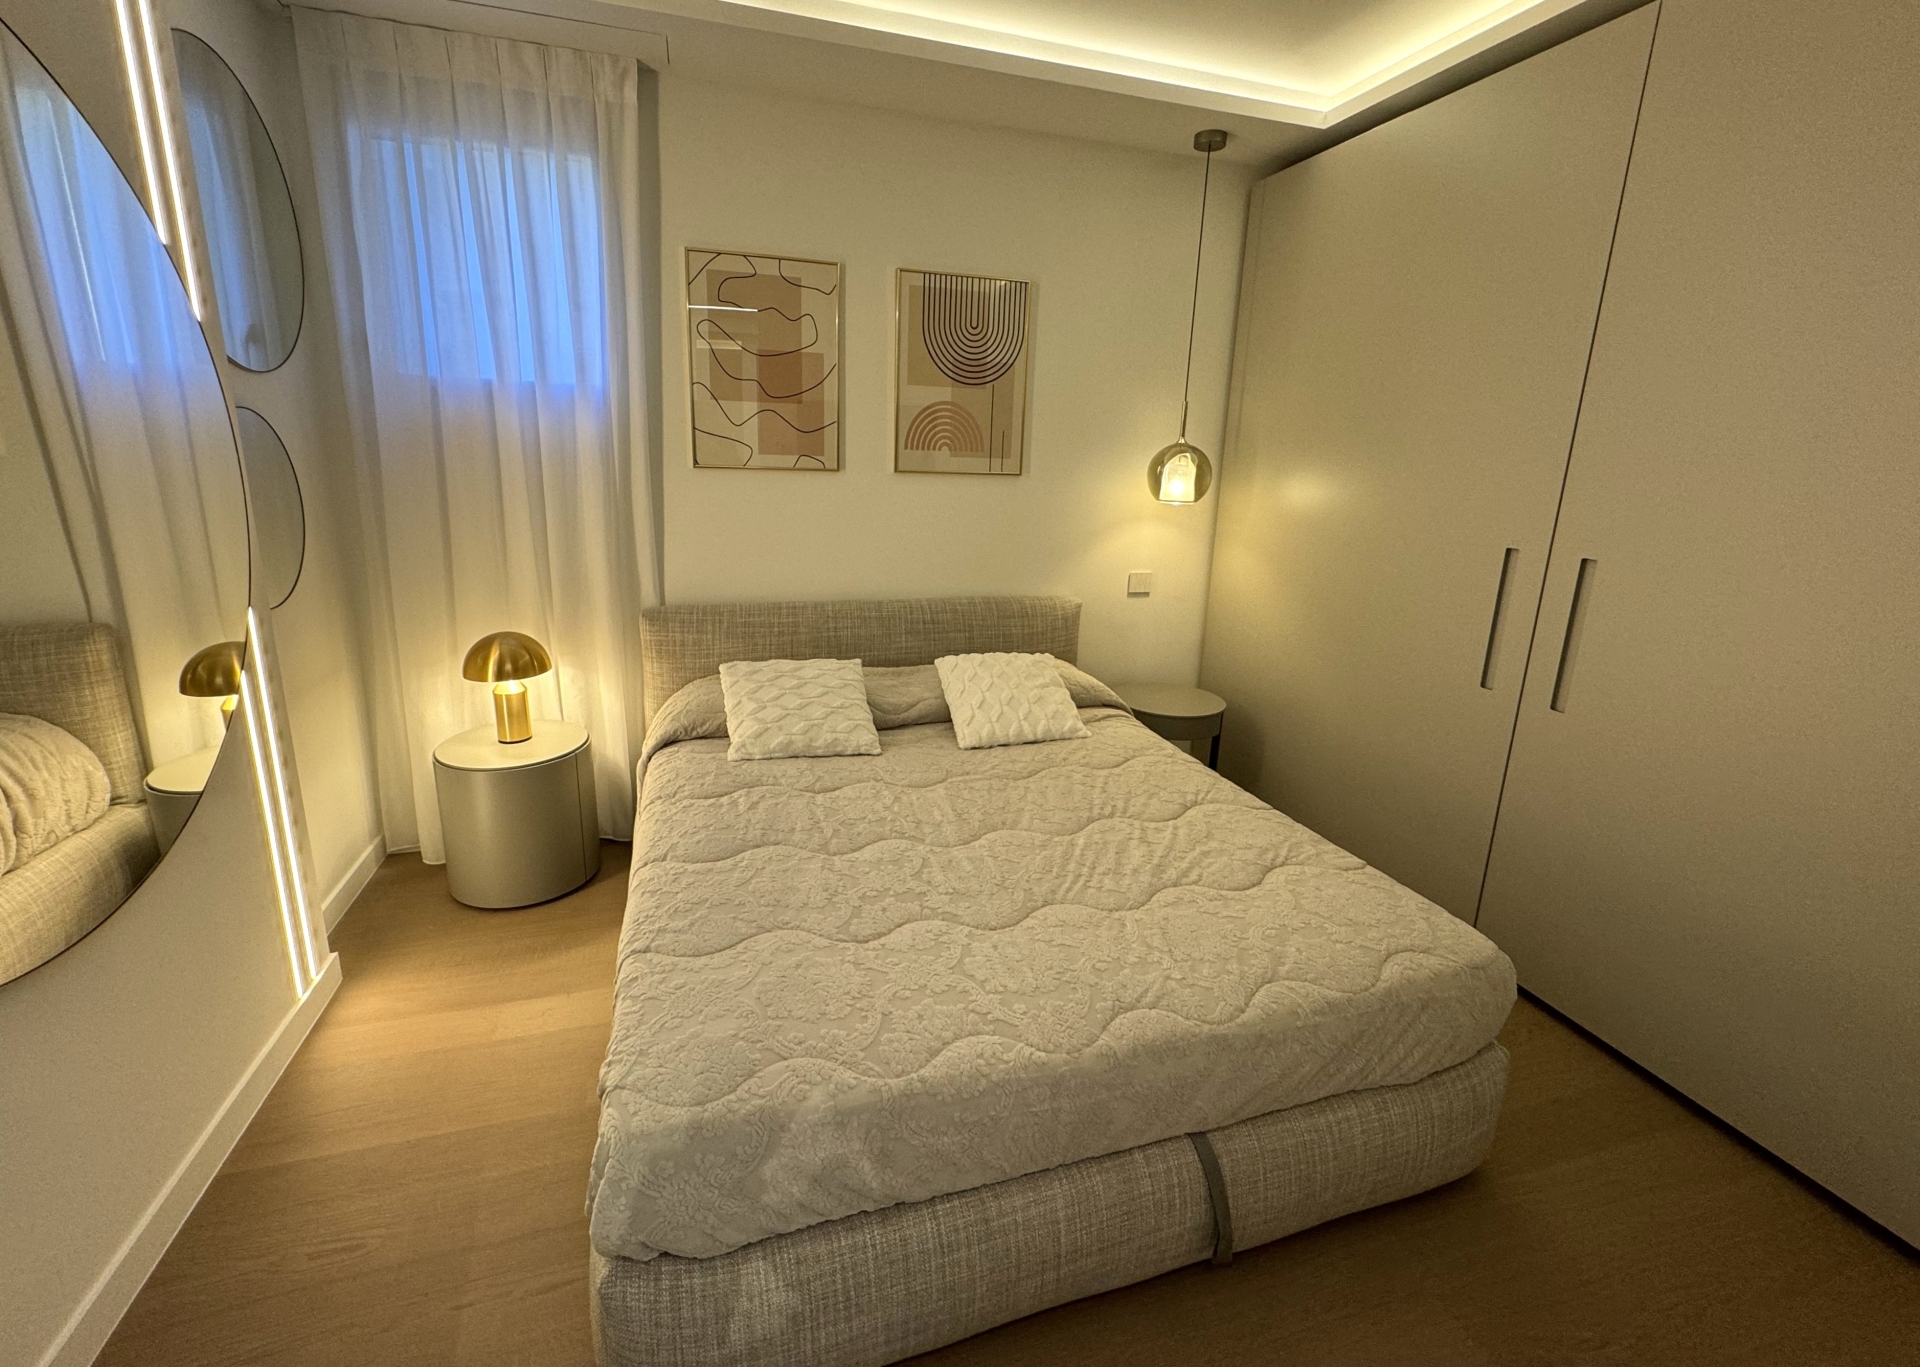 Dotta Appartement de 2 pieces a vendre - PARK PALACE - Monte-Carlo - Monaco - imgimage00007